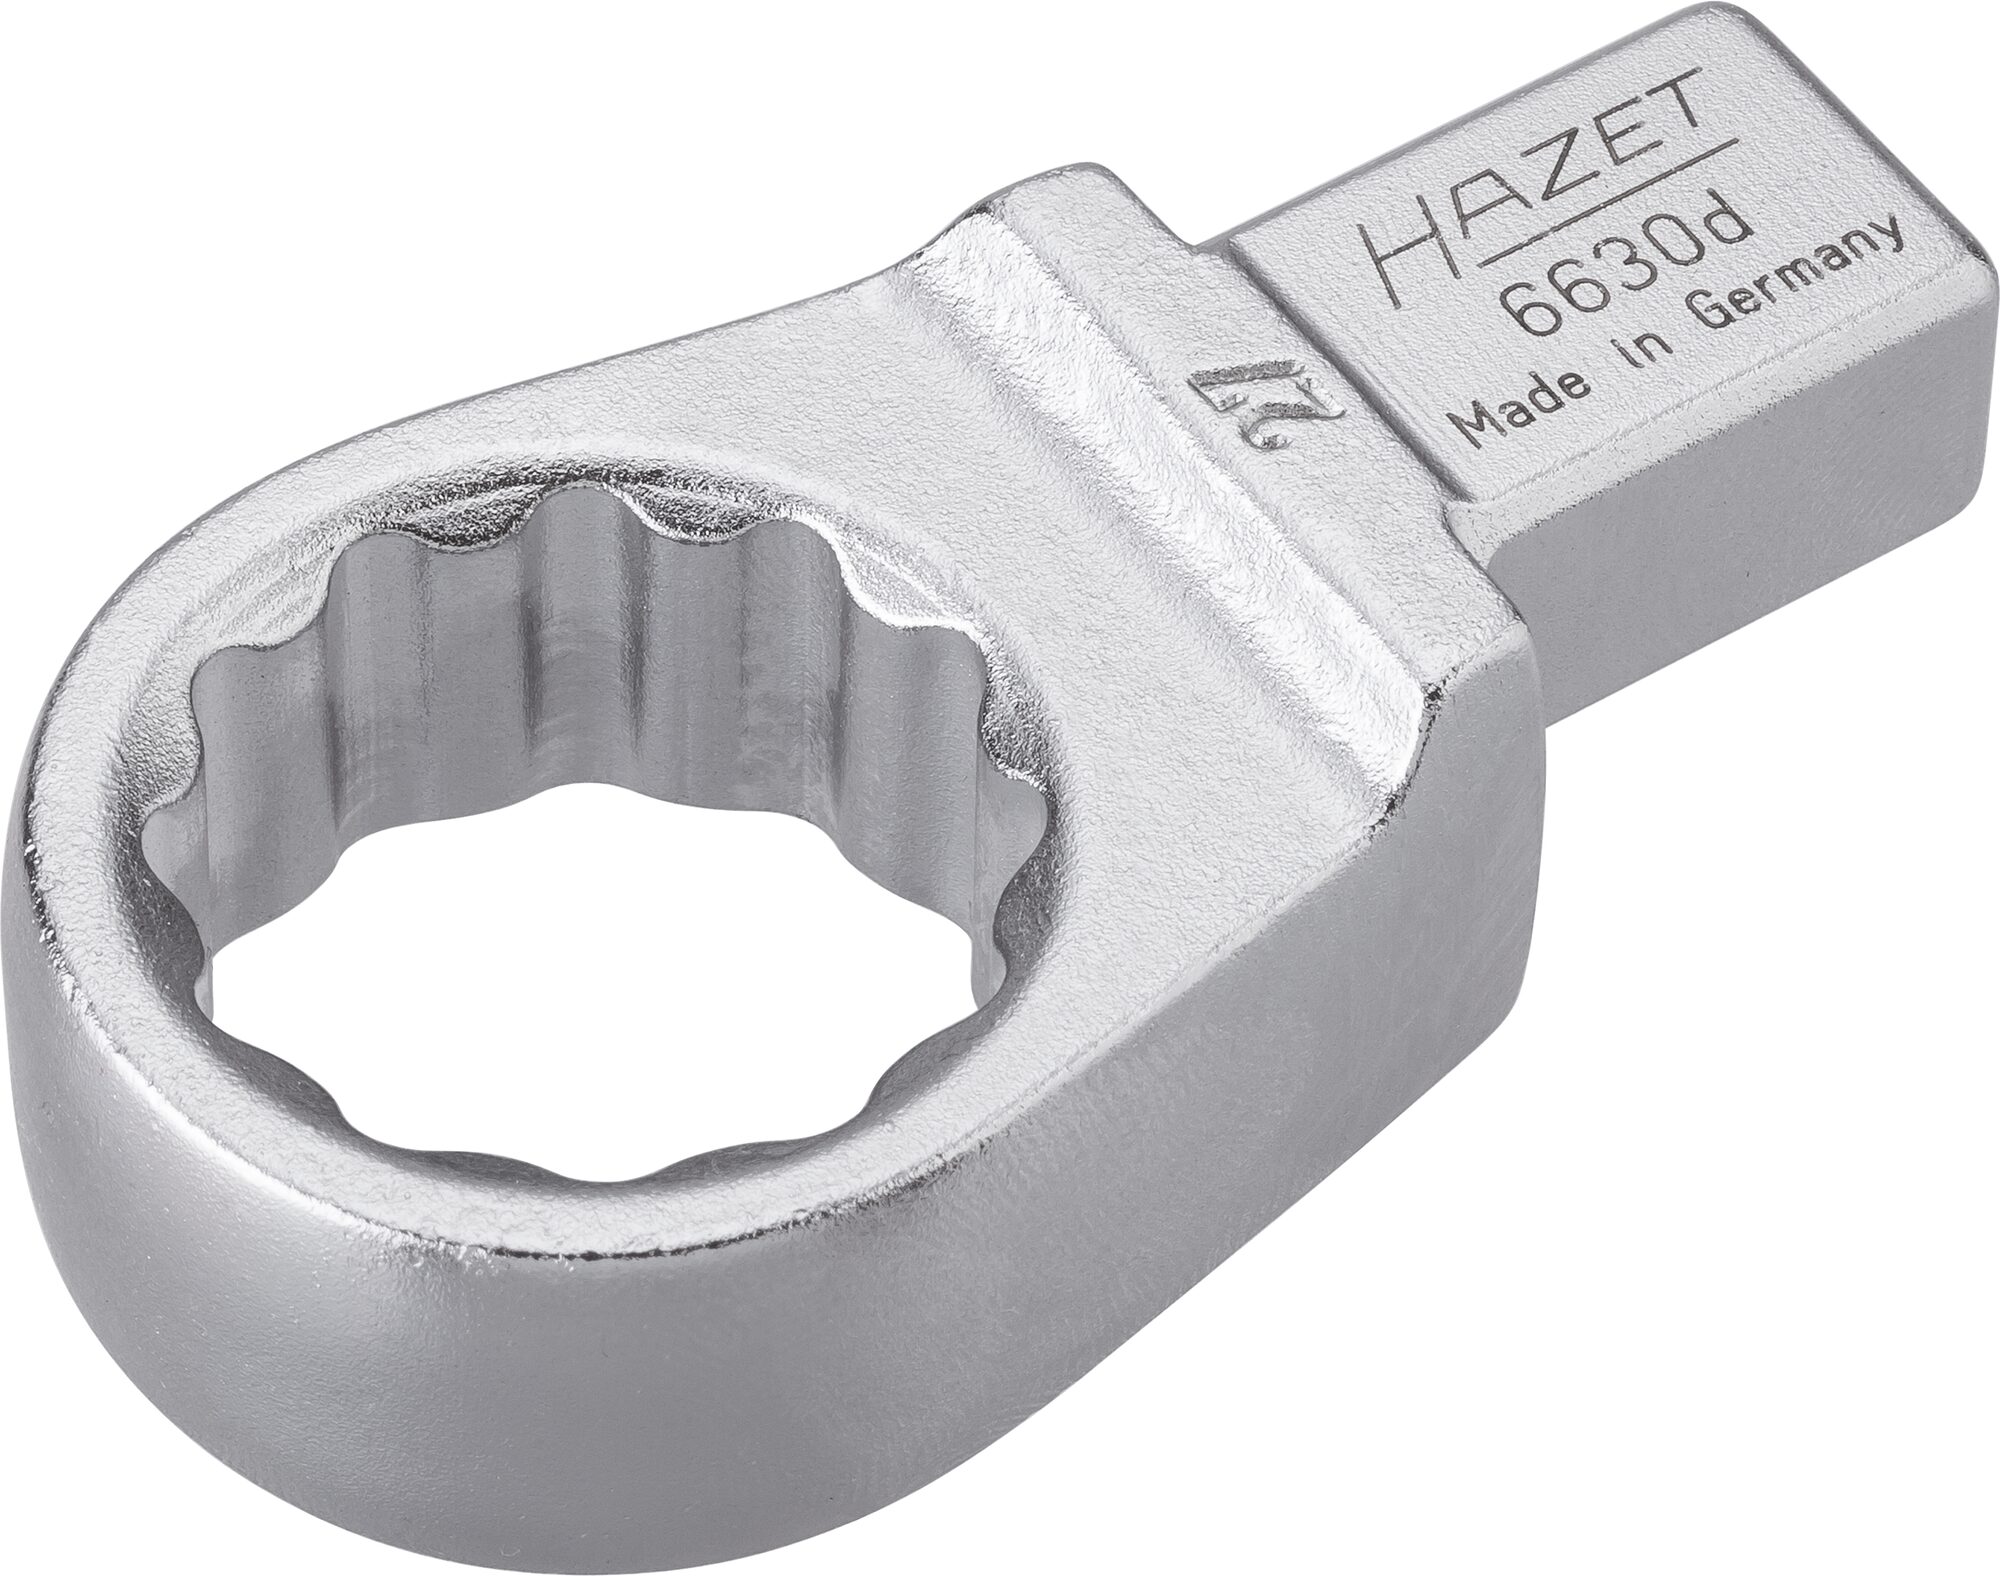 HAZET Einsteck-Ringschlüssel 6630D-27 · Einsteck-Vierkant 14 x 18 mm · Außen Doppel-Sechskant-Tractionsprofil · 27 mm